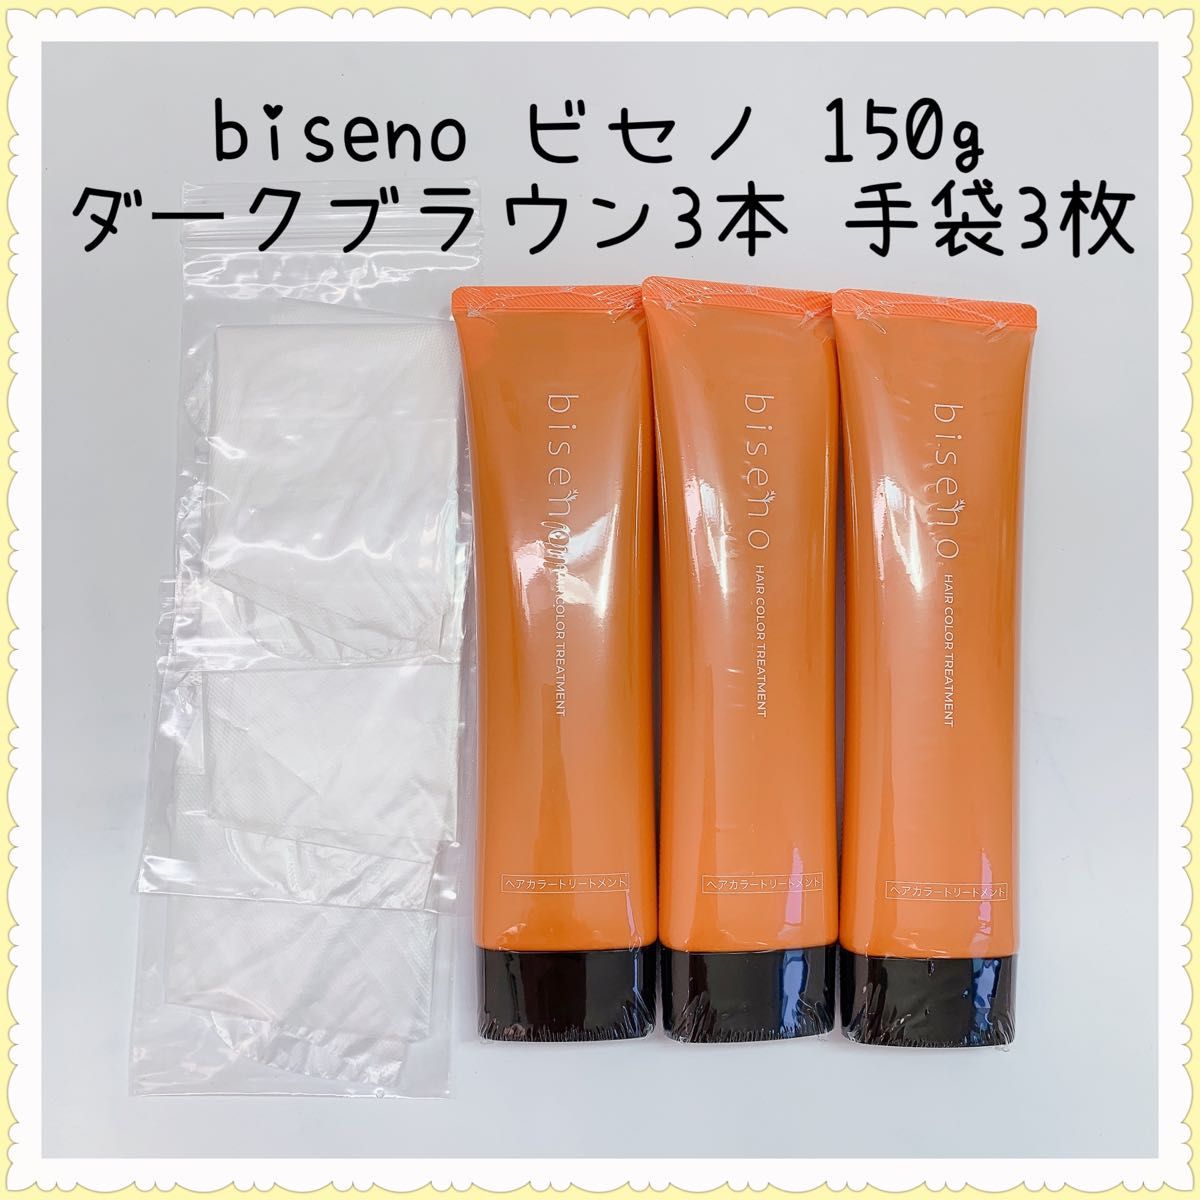 biseno ビセノ 150gダークブラウン 3本 ビニール手袋3枚